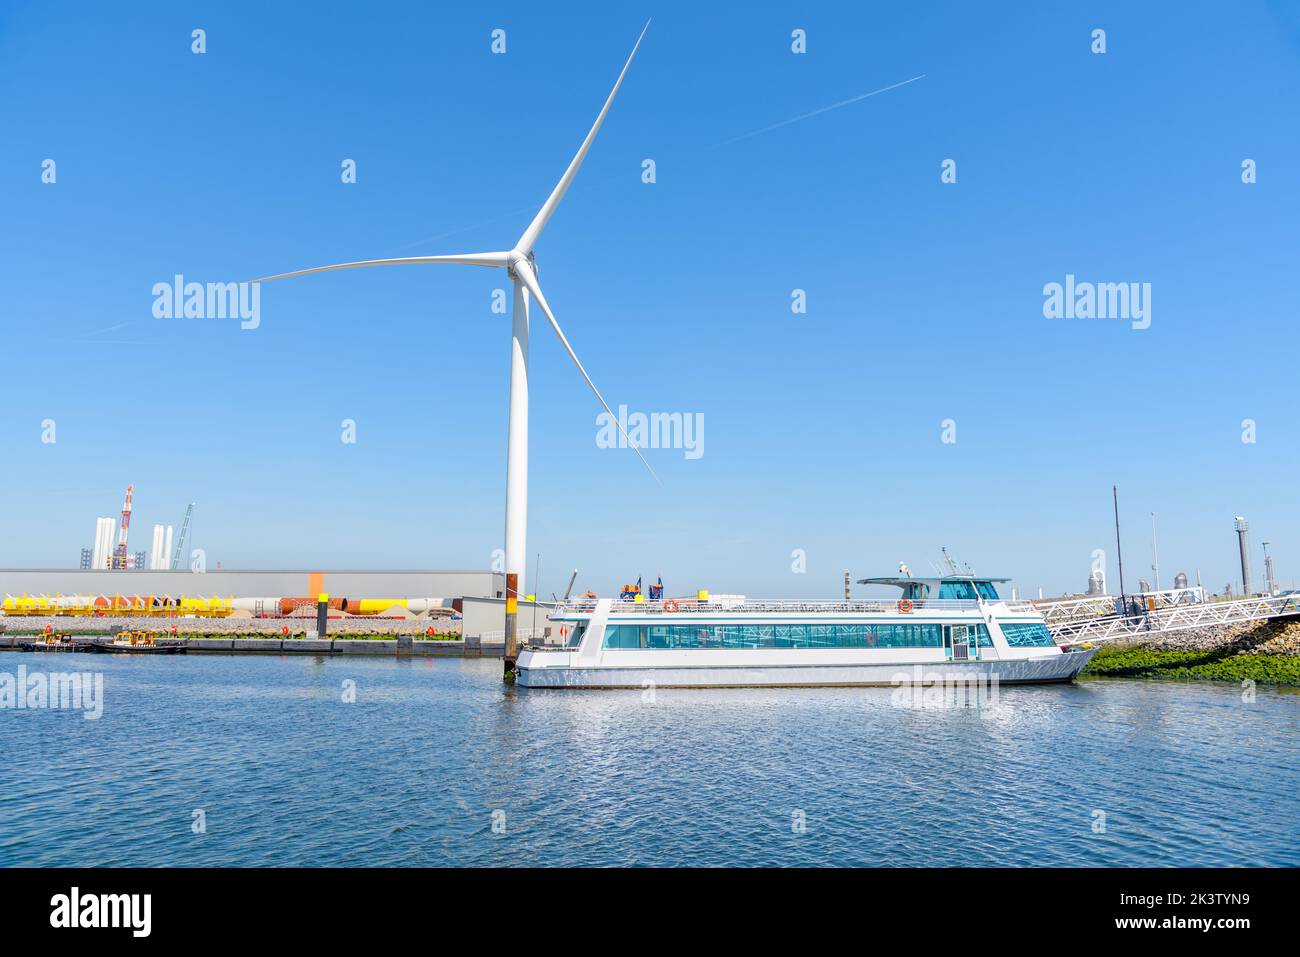 Leere Passagierfähre, die in einem Handelshafen mit einer hohen Windturbine im Hintergrund unter klarem Himmel vertäut ist Stockfoto